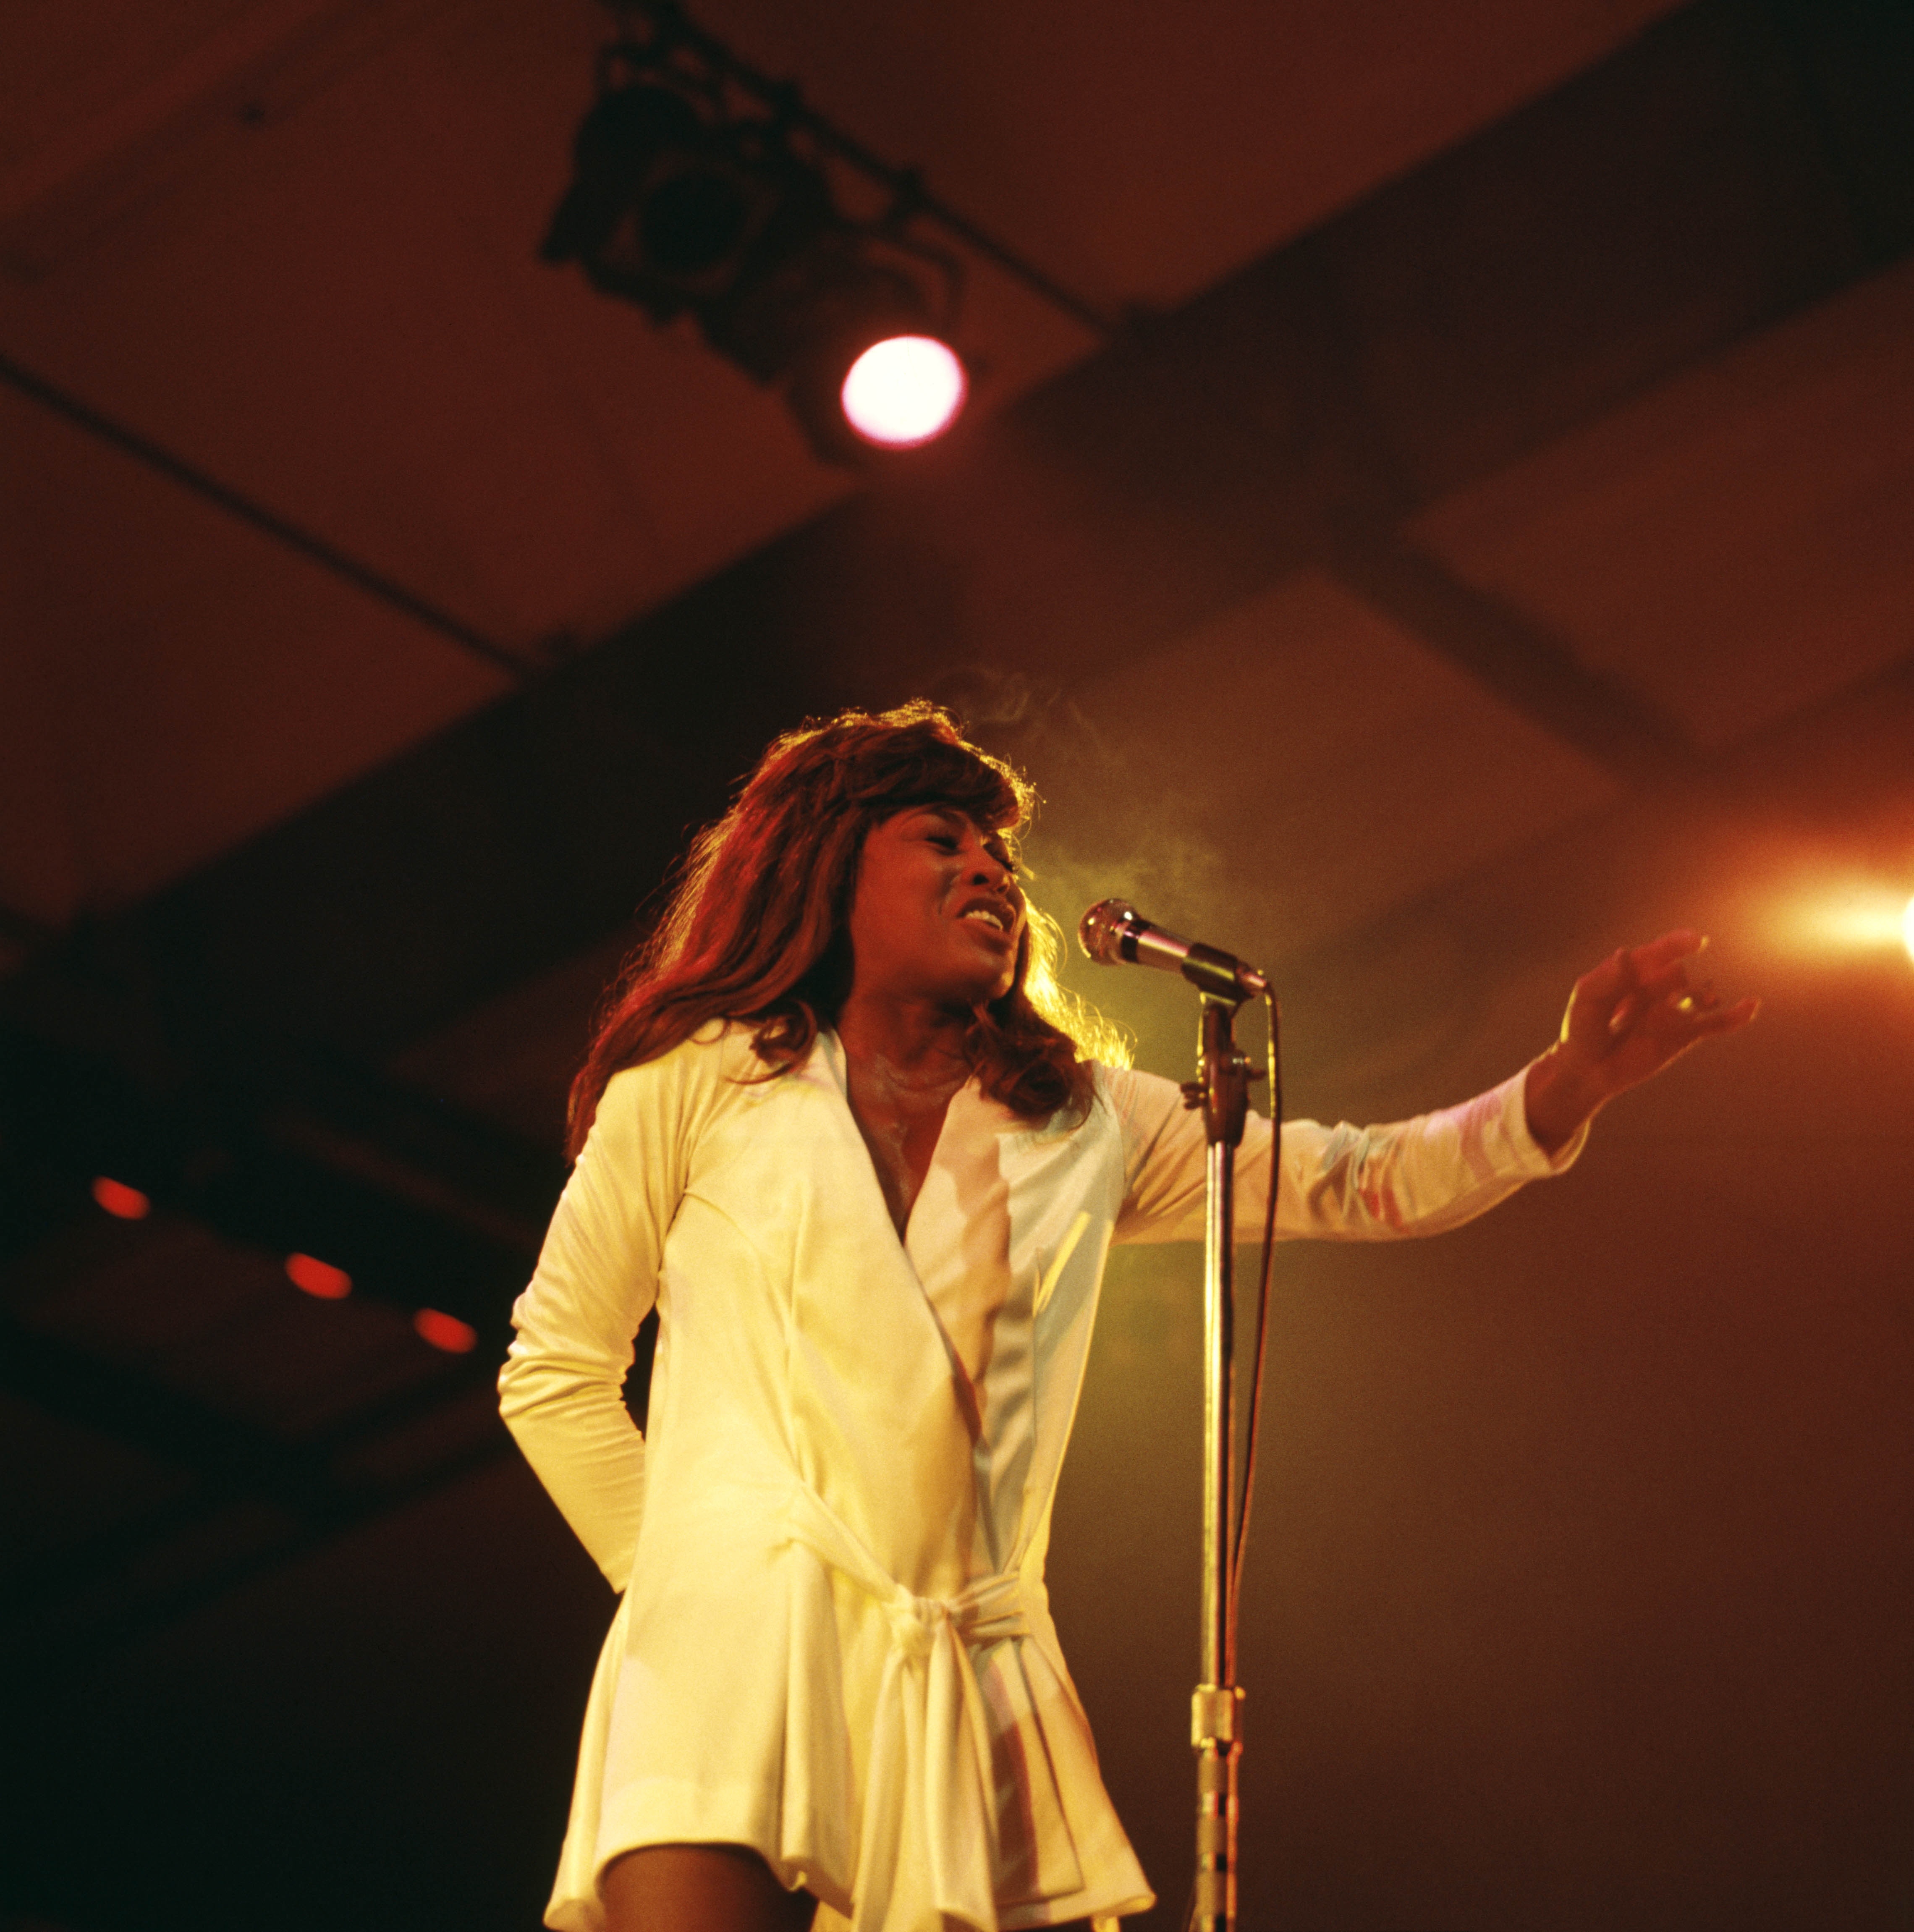 La chanteuse se produisant sur scène le 11 juillet 1970. | Source : Getty Images